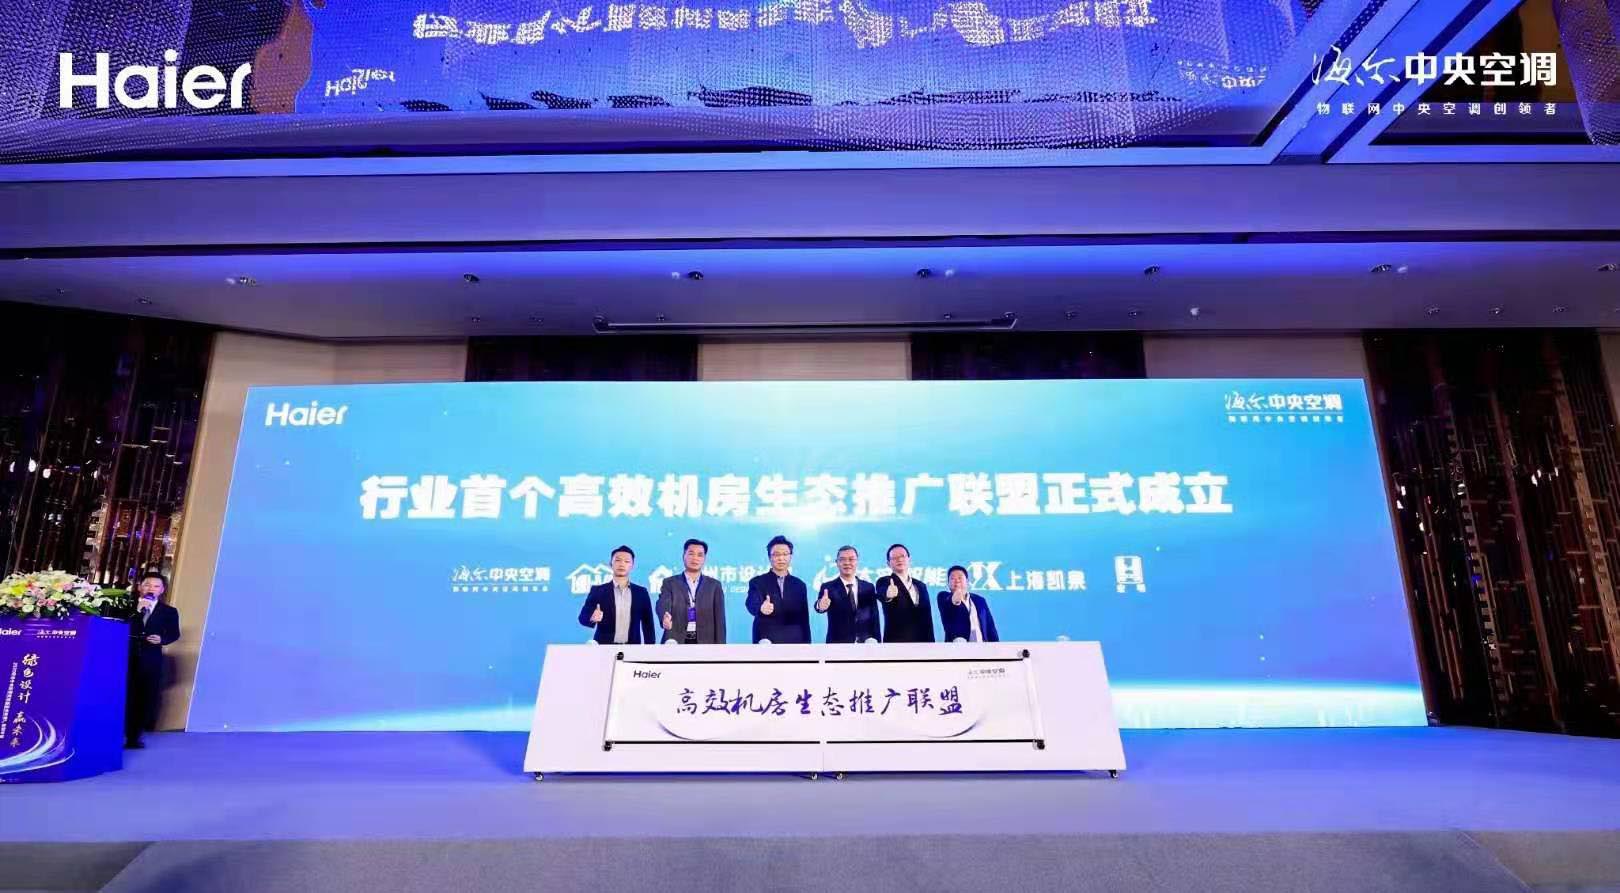 强强联手共建绿色生态 | 上海凯泉成为首个高效机房生态推广联盟j9游会真人游戏第一品牌的合作伙伴